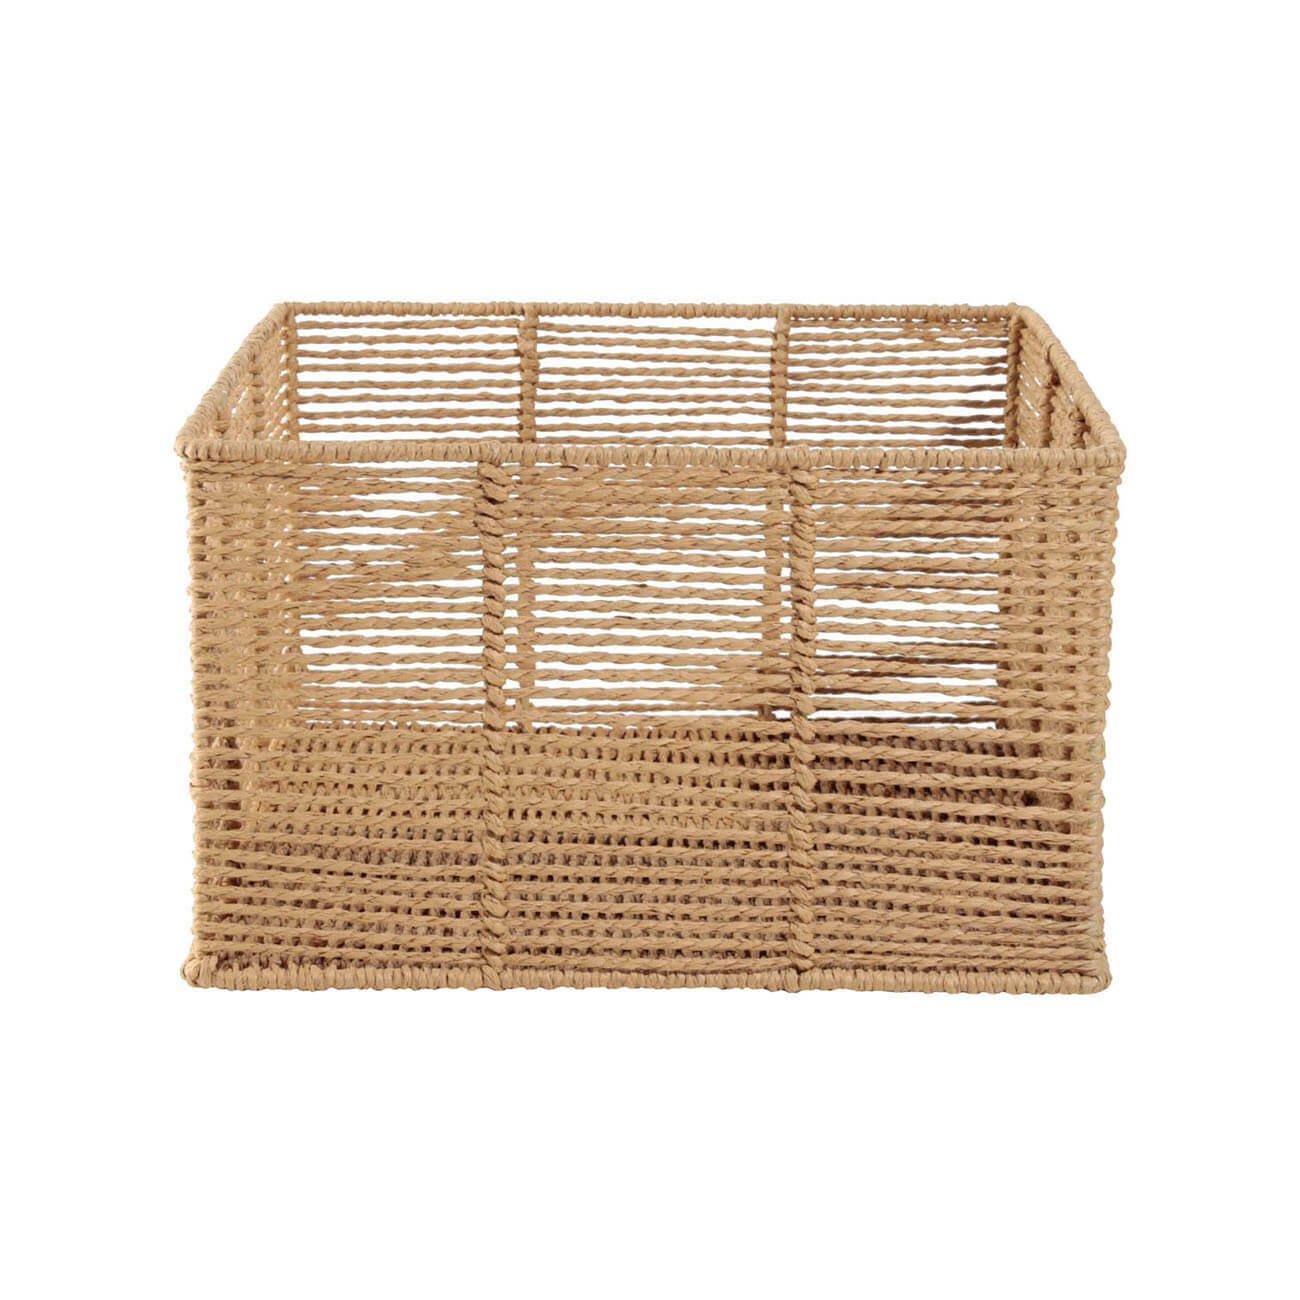 Корзина для хранения, 20х14 см, бумага/металл, квадратная, бежевая, Village корзина для хранения плетеная ручной работы